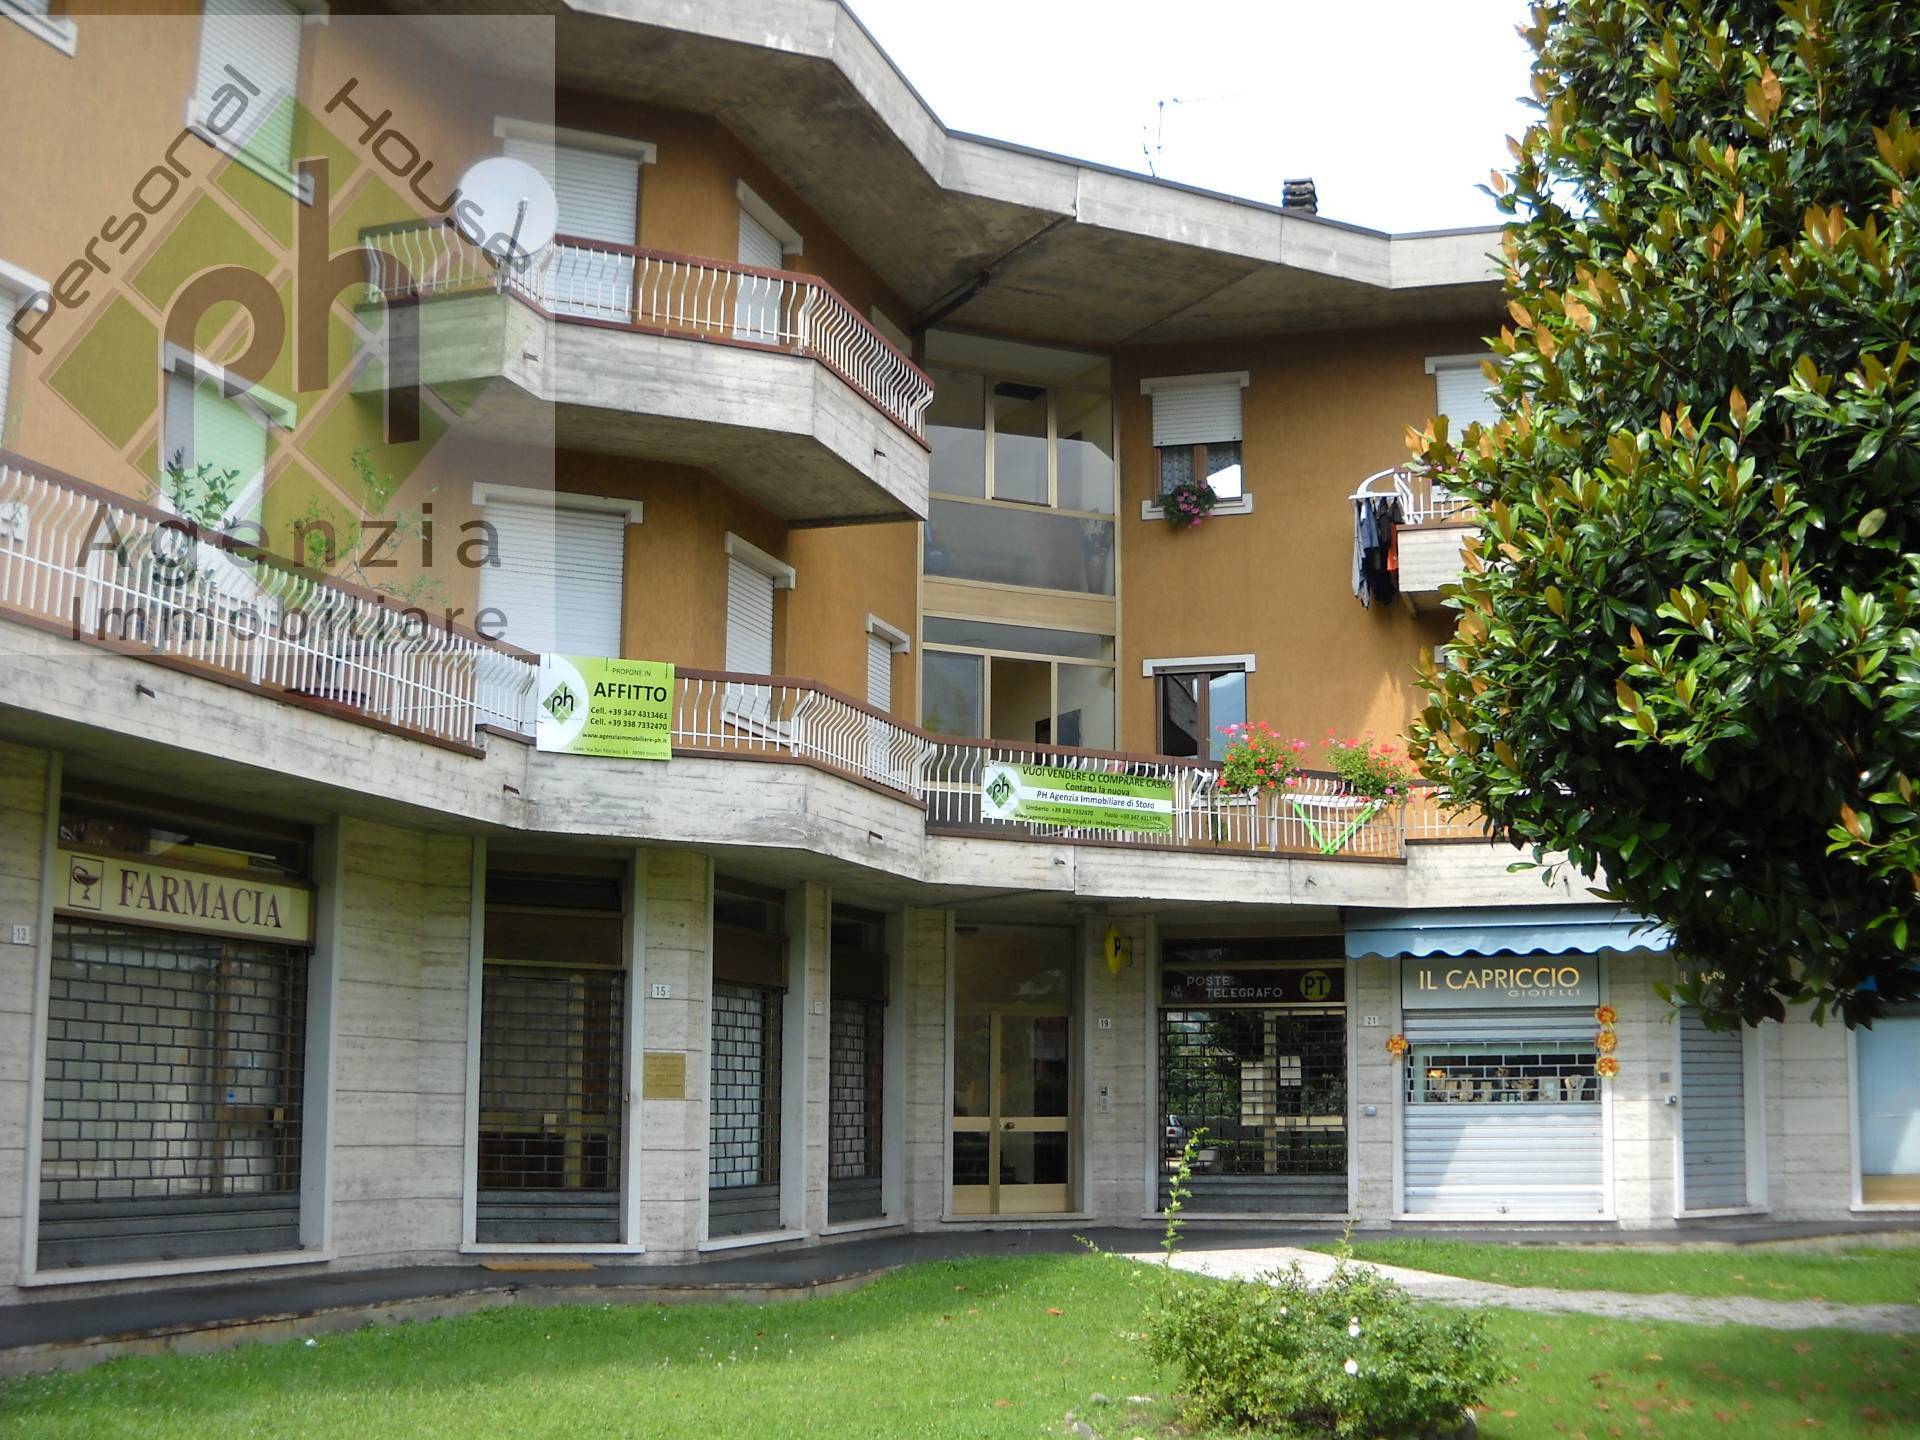 Appartamento in vendita a Bagolino, 6 locali, zona Località: PonteCaffaro, prezzo € 120.000 | PortaleAgenzieImmobiliari.it